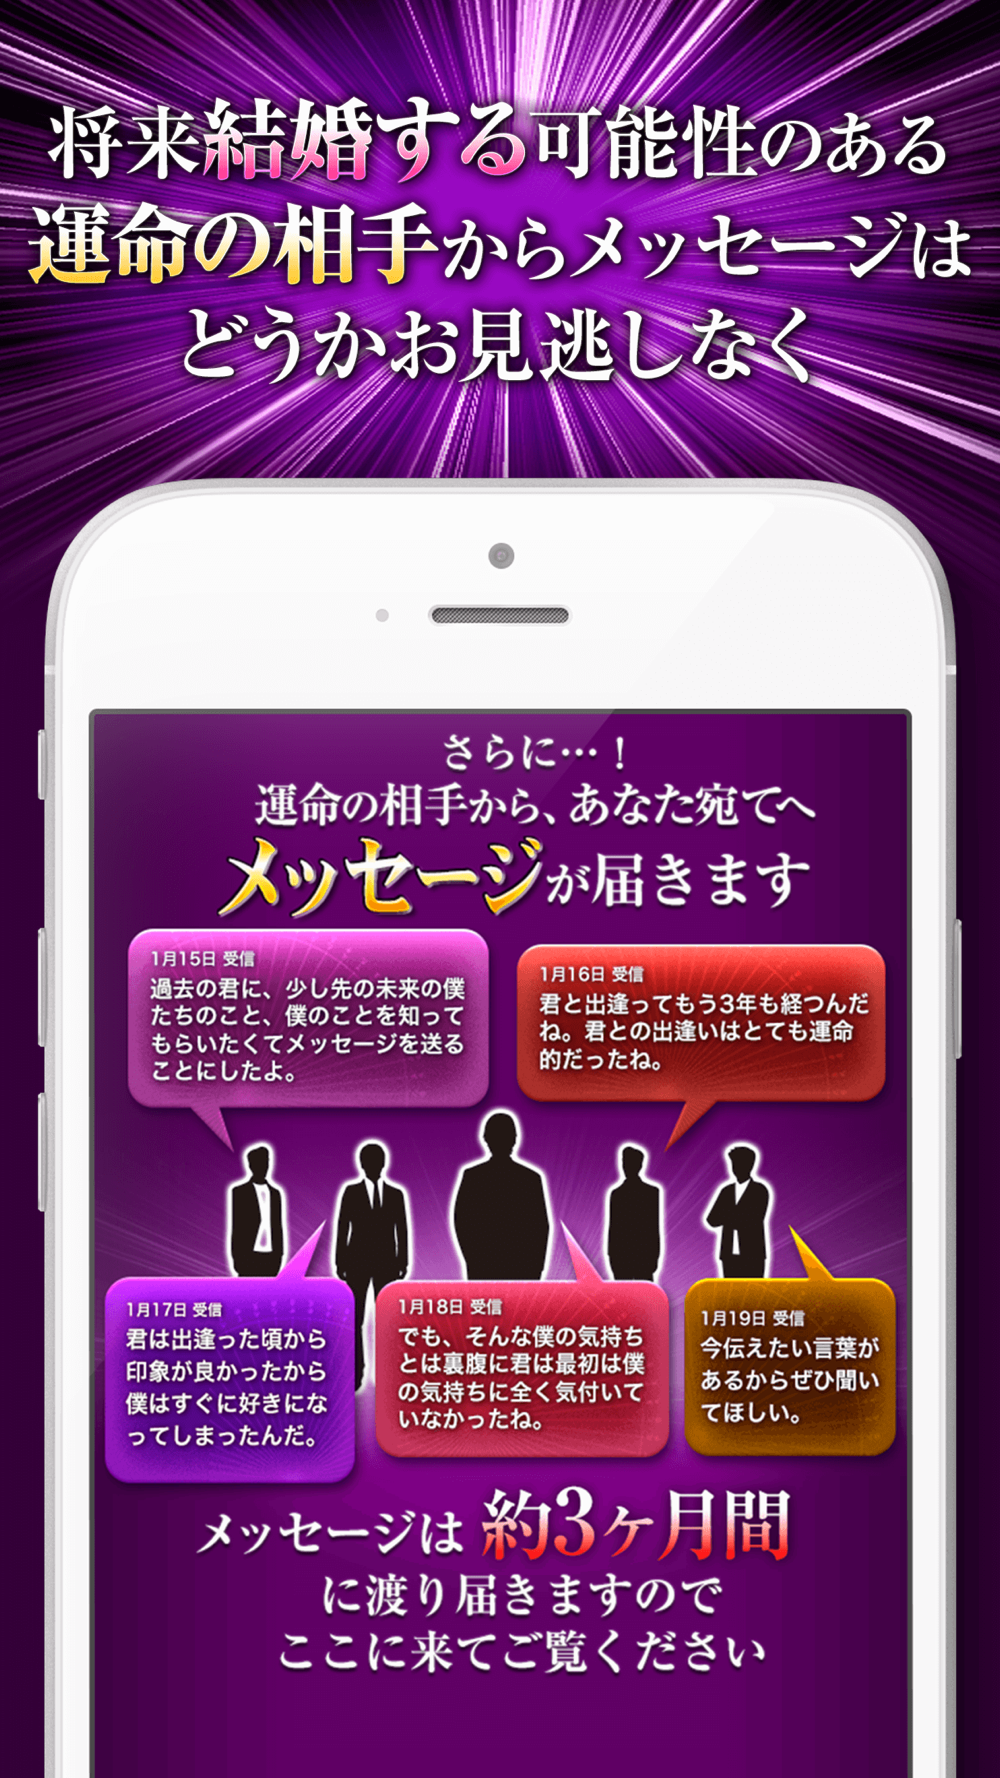 顔までわかる運命の相手占い 2020年の最新顔占い Free Download App For Iphone Steprimo Com